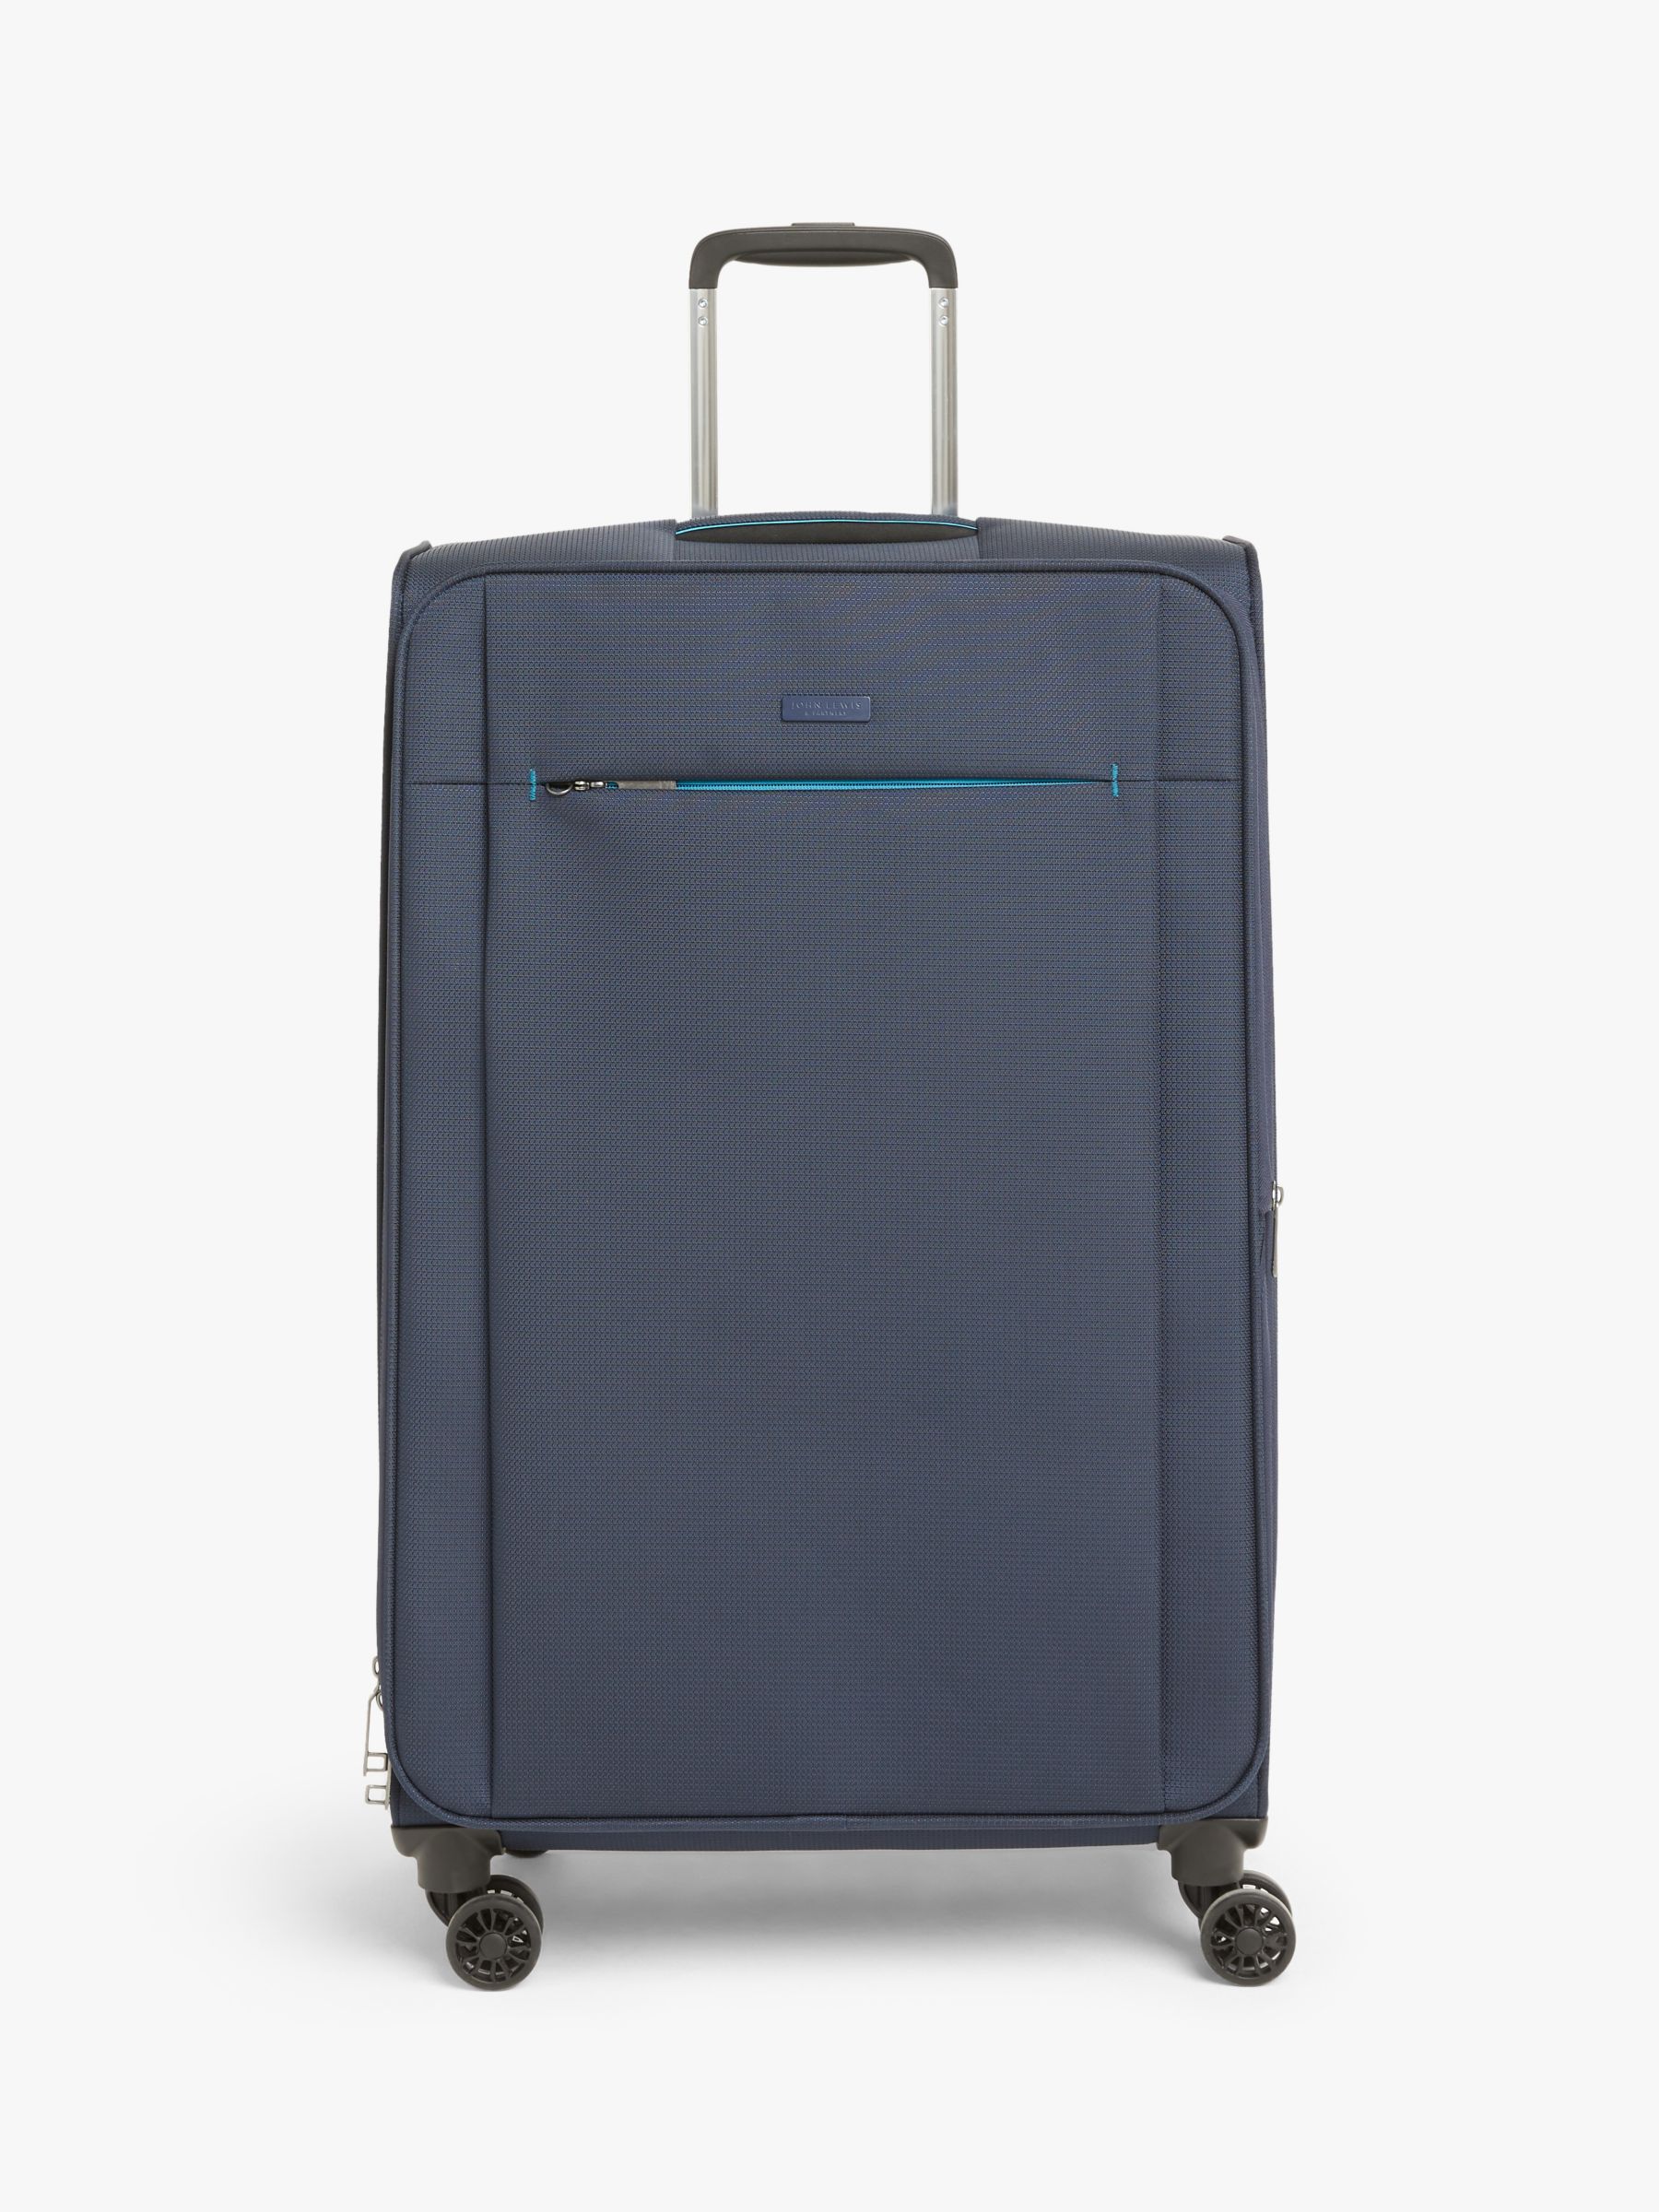 John Lewis & Partners Vienna 4-Wheel 76cm Lightweight Large Suitcase at John Lewis & Partners